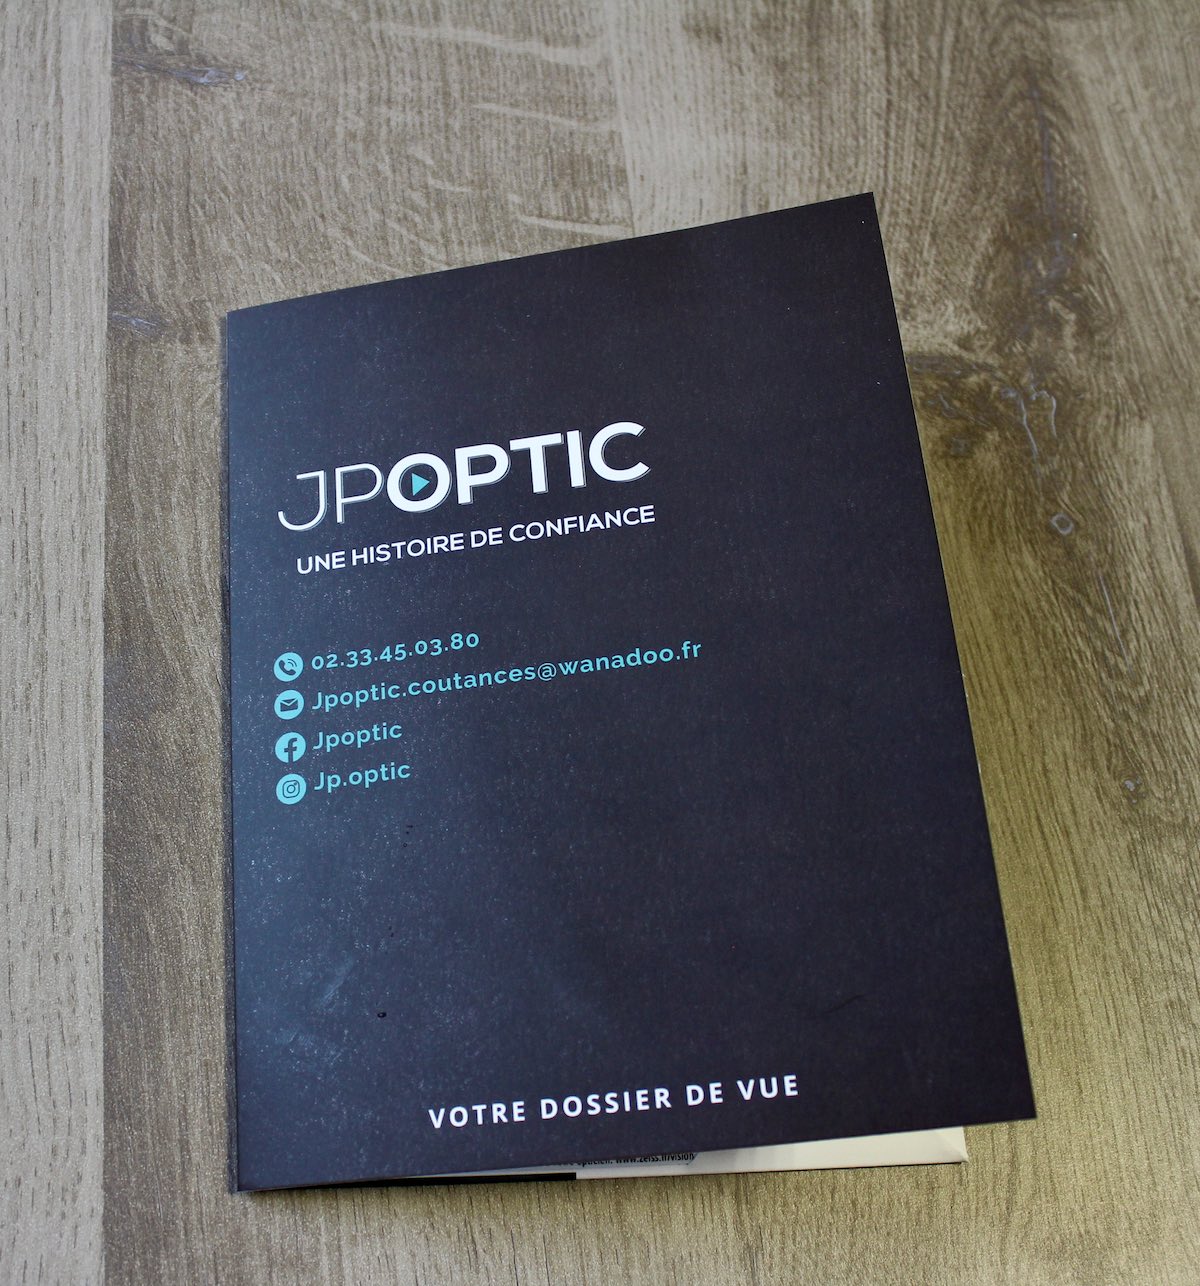 Dossier de vue optique JP Optic coutances